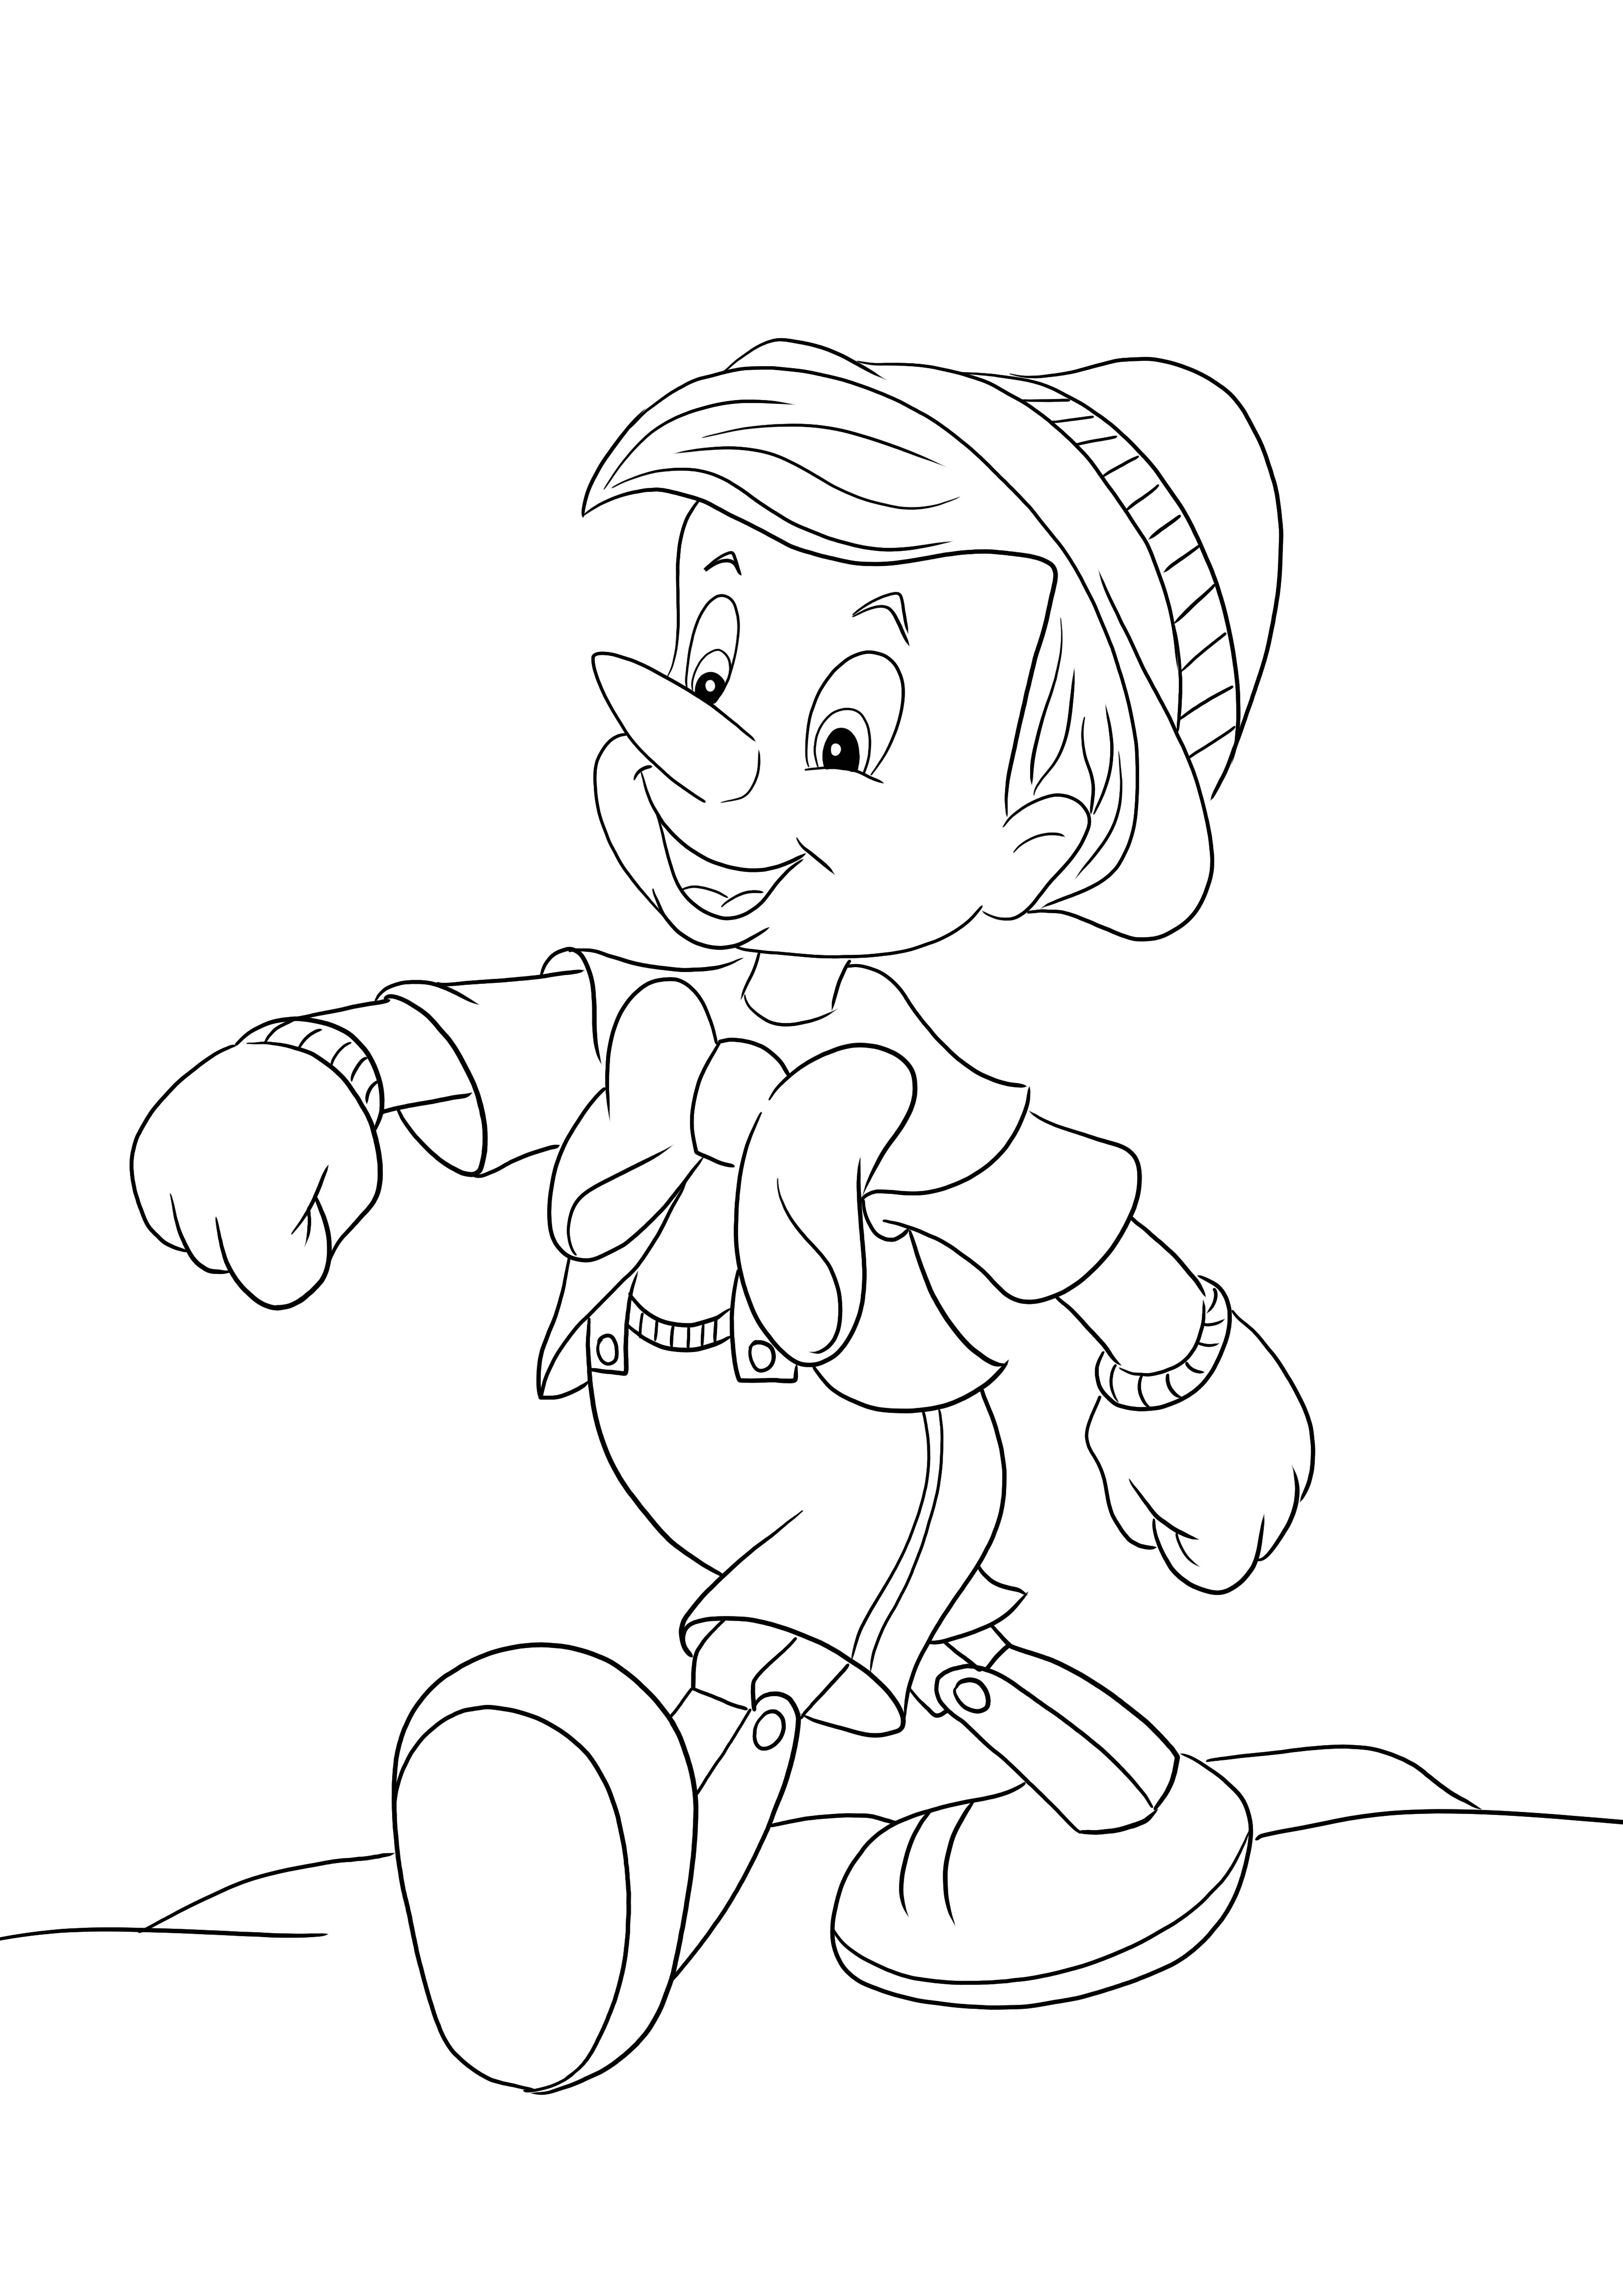 Pinocchio geht stolz als Malvorlage – bereit zum Herunterladen und Ausmalen